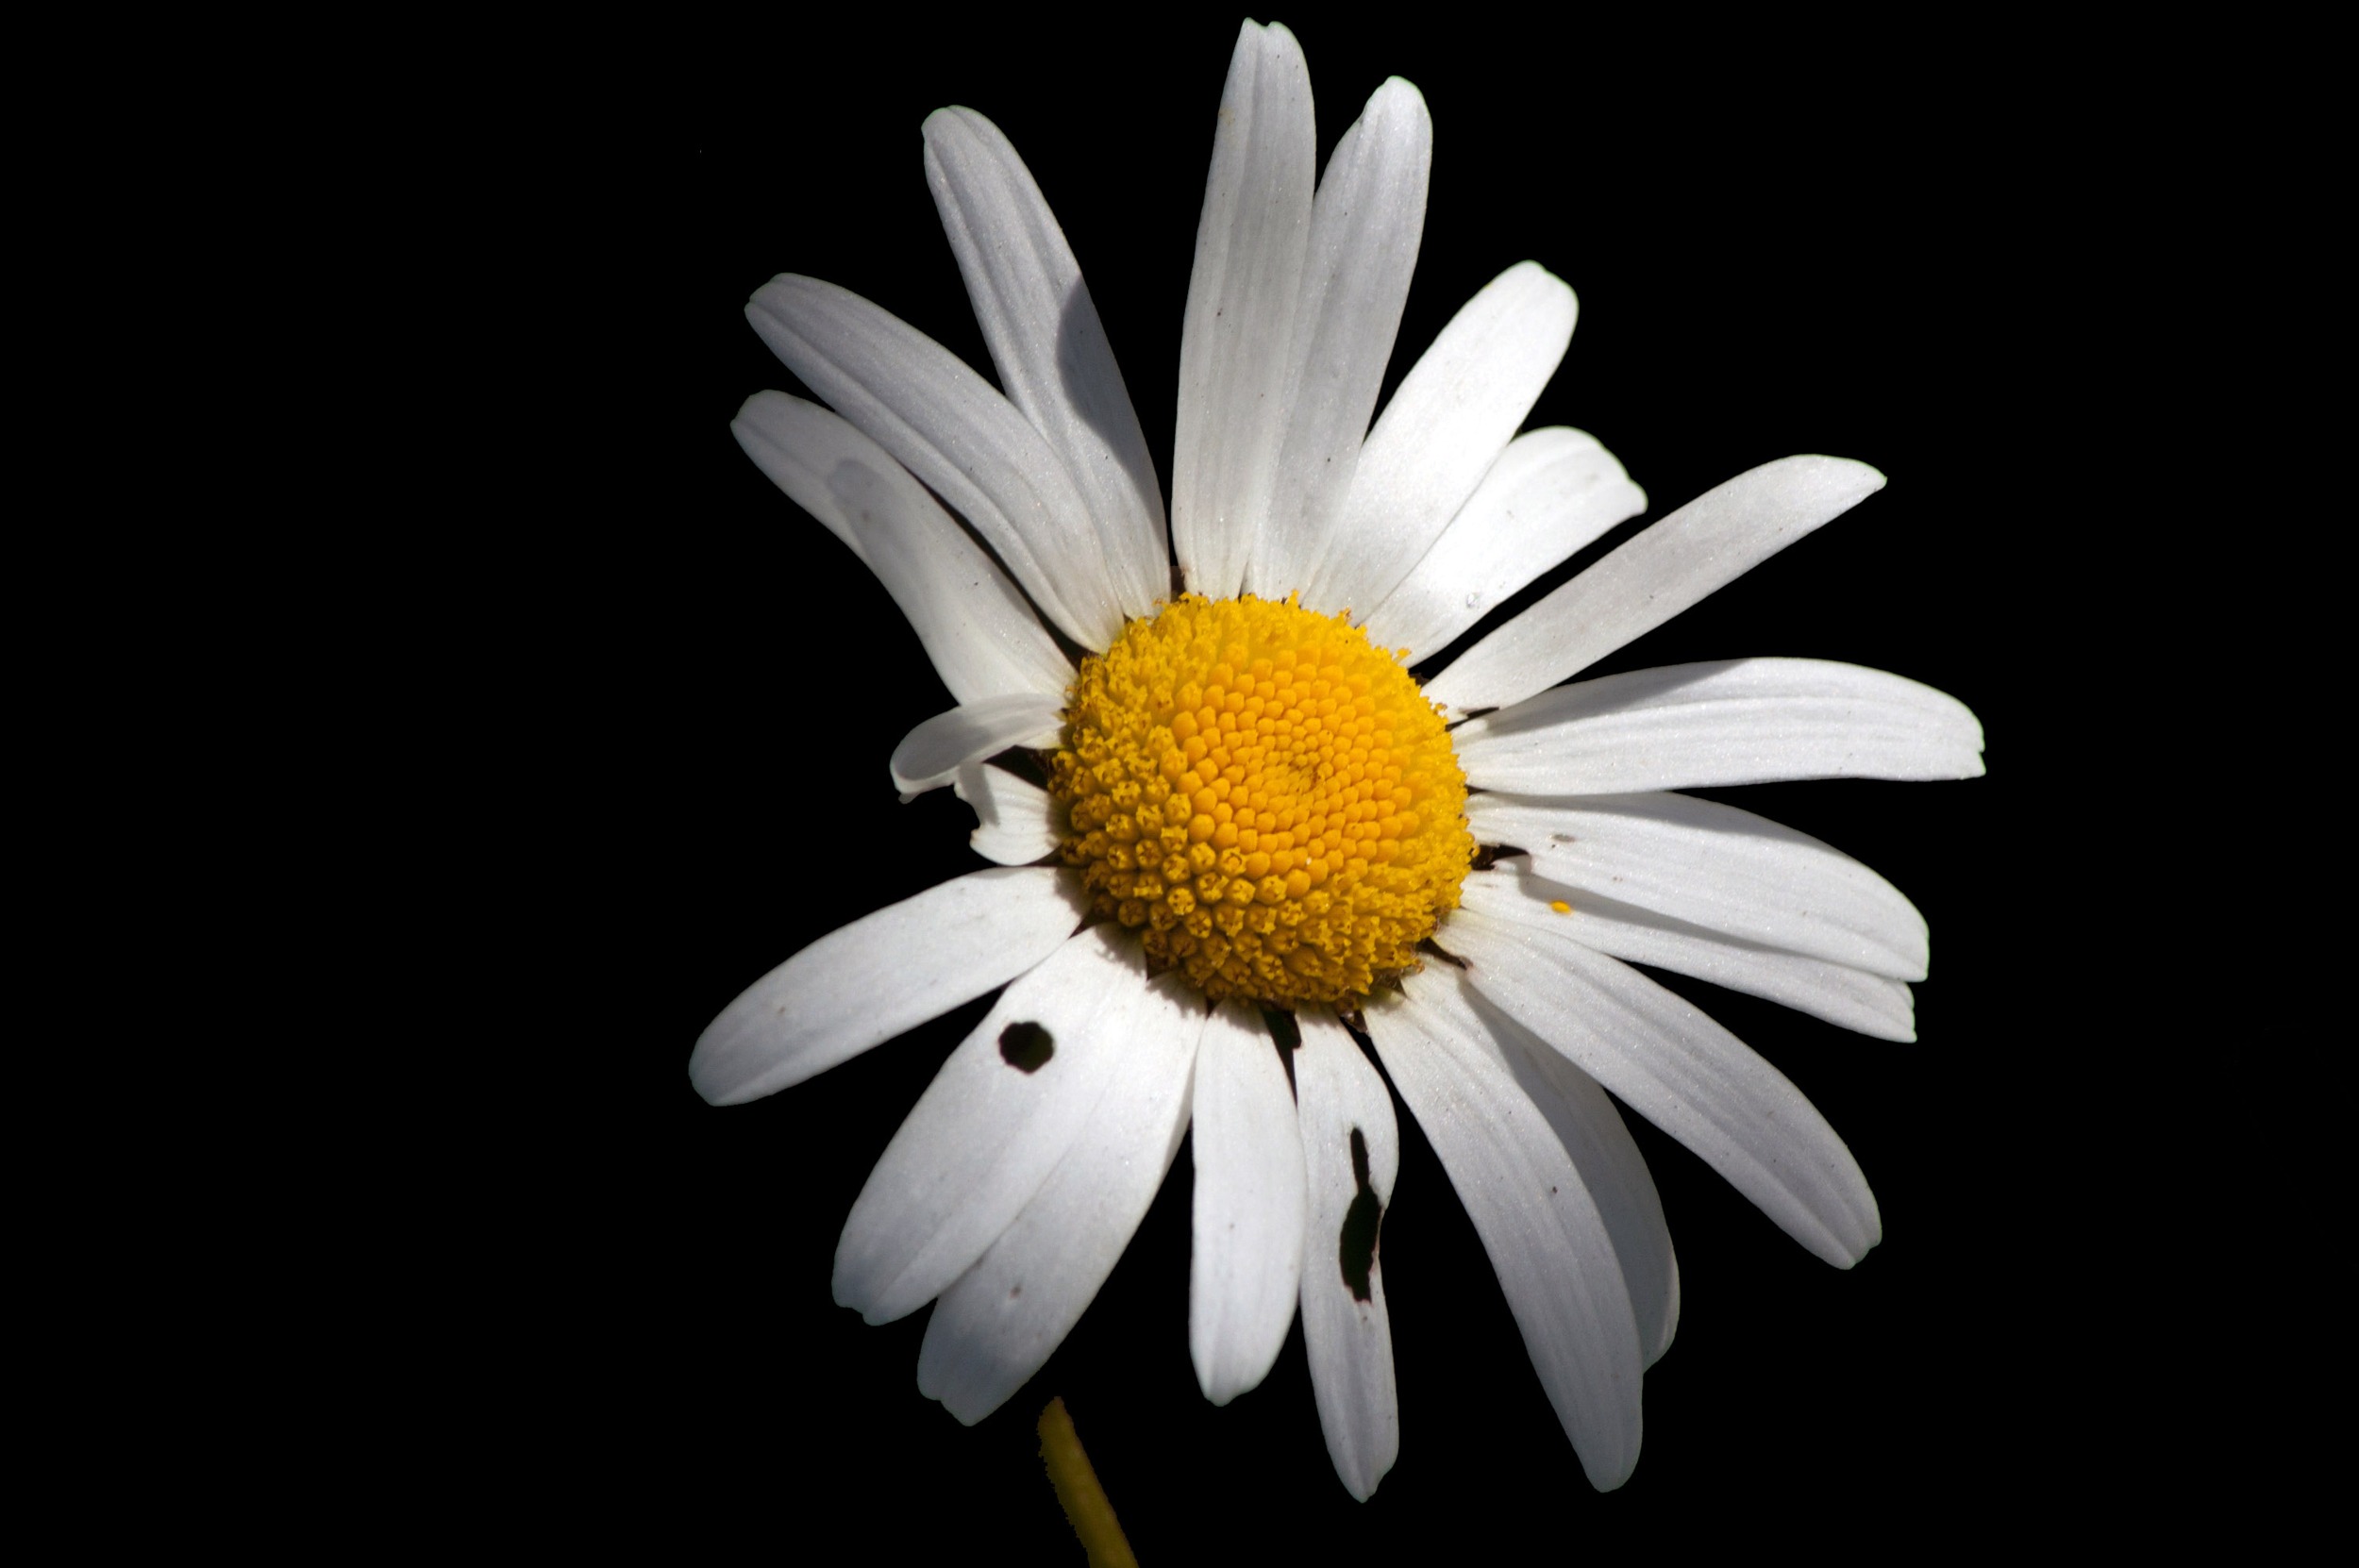 Hình ảnh hoa cúc trắng nền đen